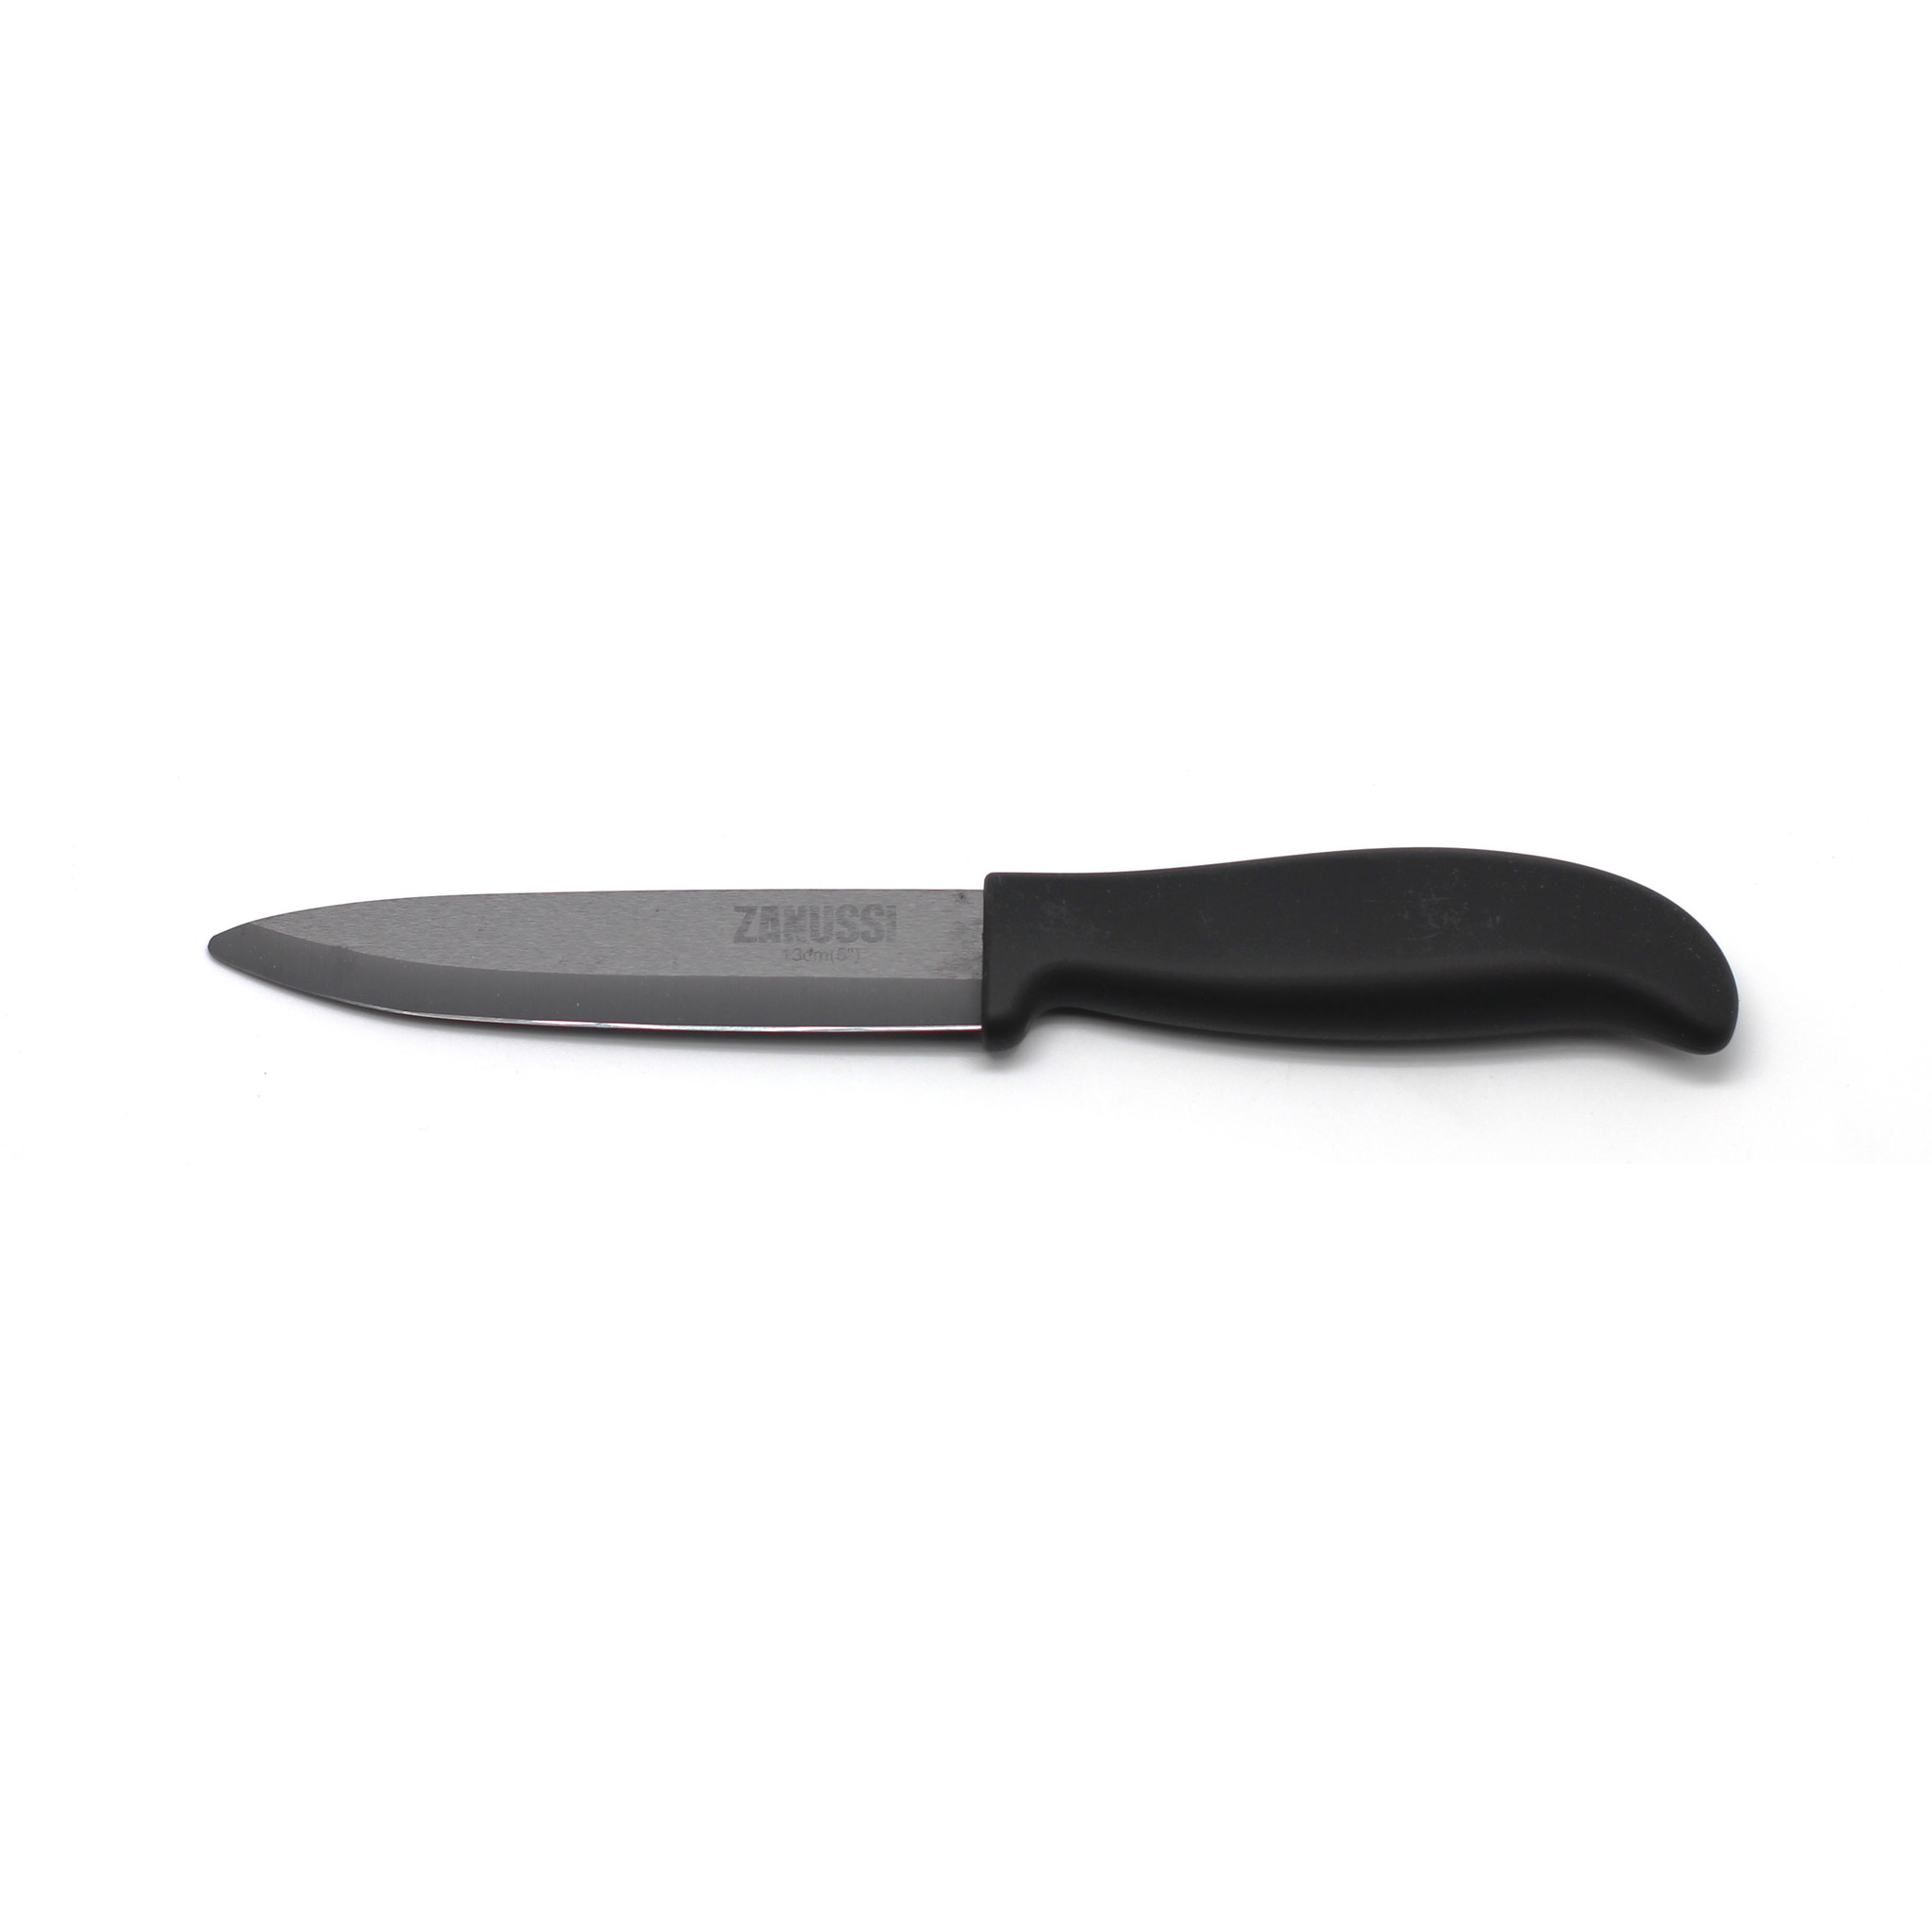 Нож разделочный Zanussi Milano 13 см, цвет черный - фото 1